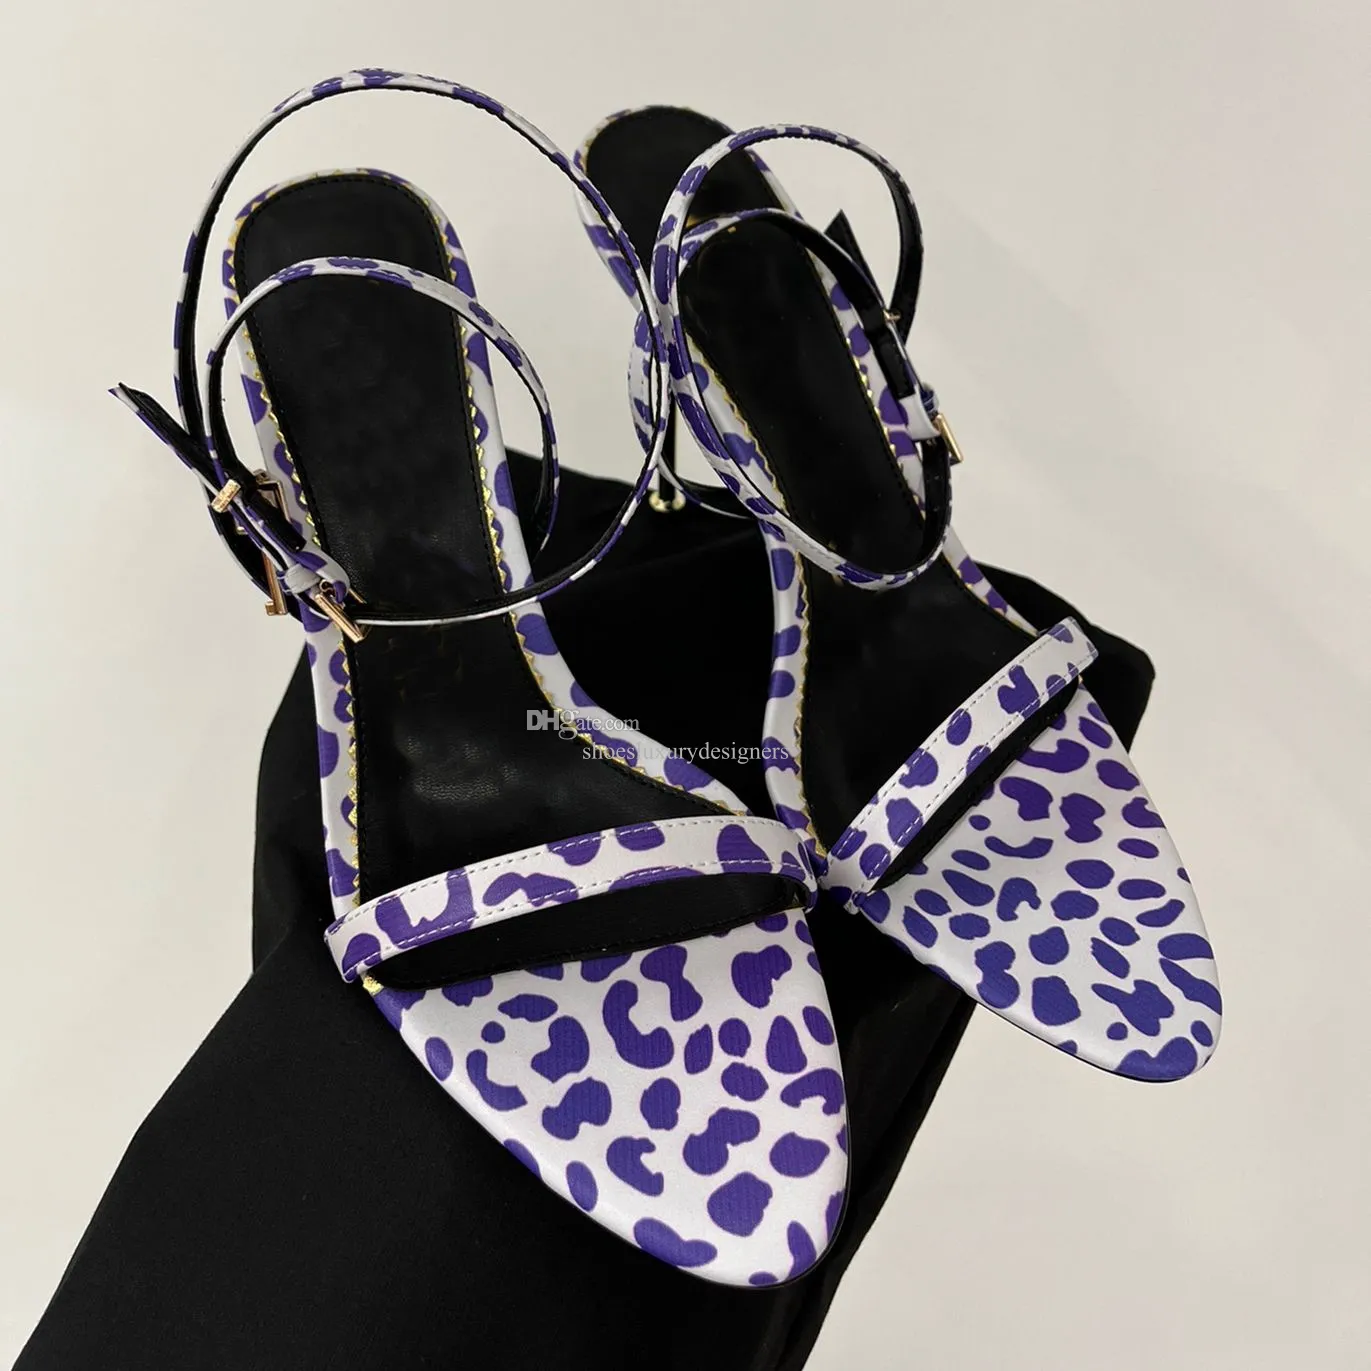 Topkwaliteit 10,5 cm hoge open puntige tenen Stiletto hak sandalen verstelbare gesp enkelband schoenen pak voor feest dames luxe ontwerpers fabrieksschoenen met doos